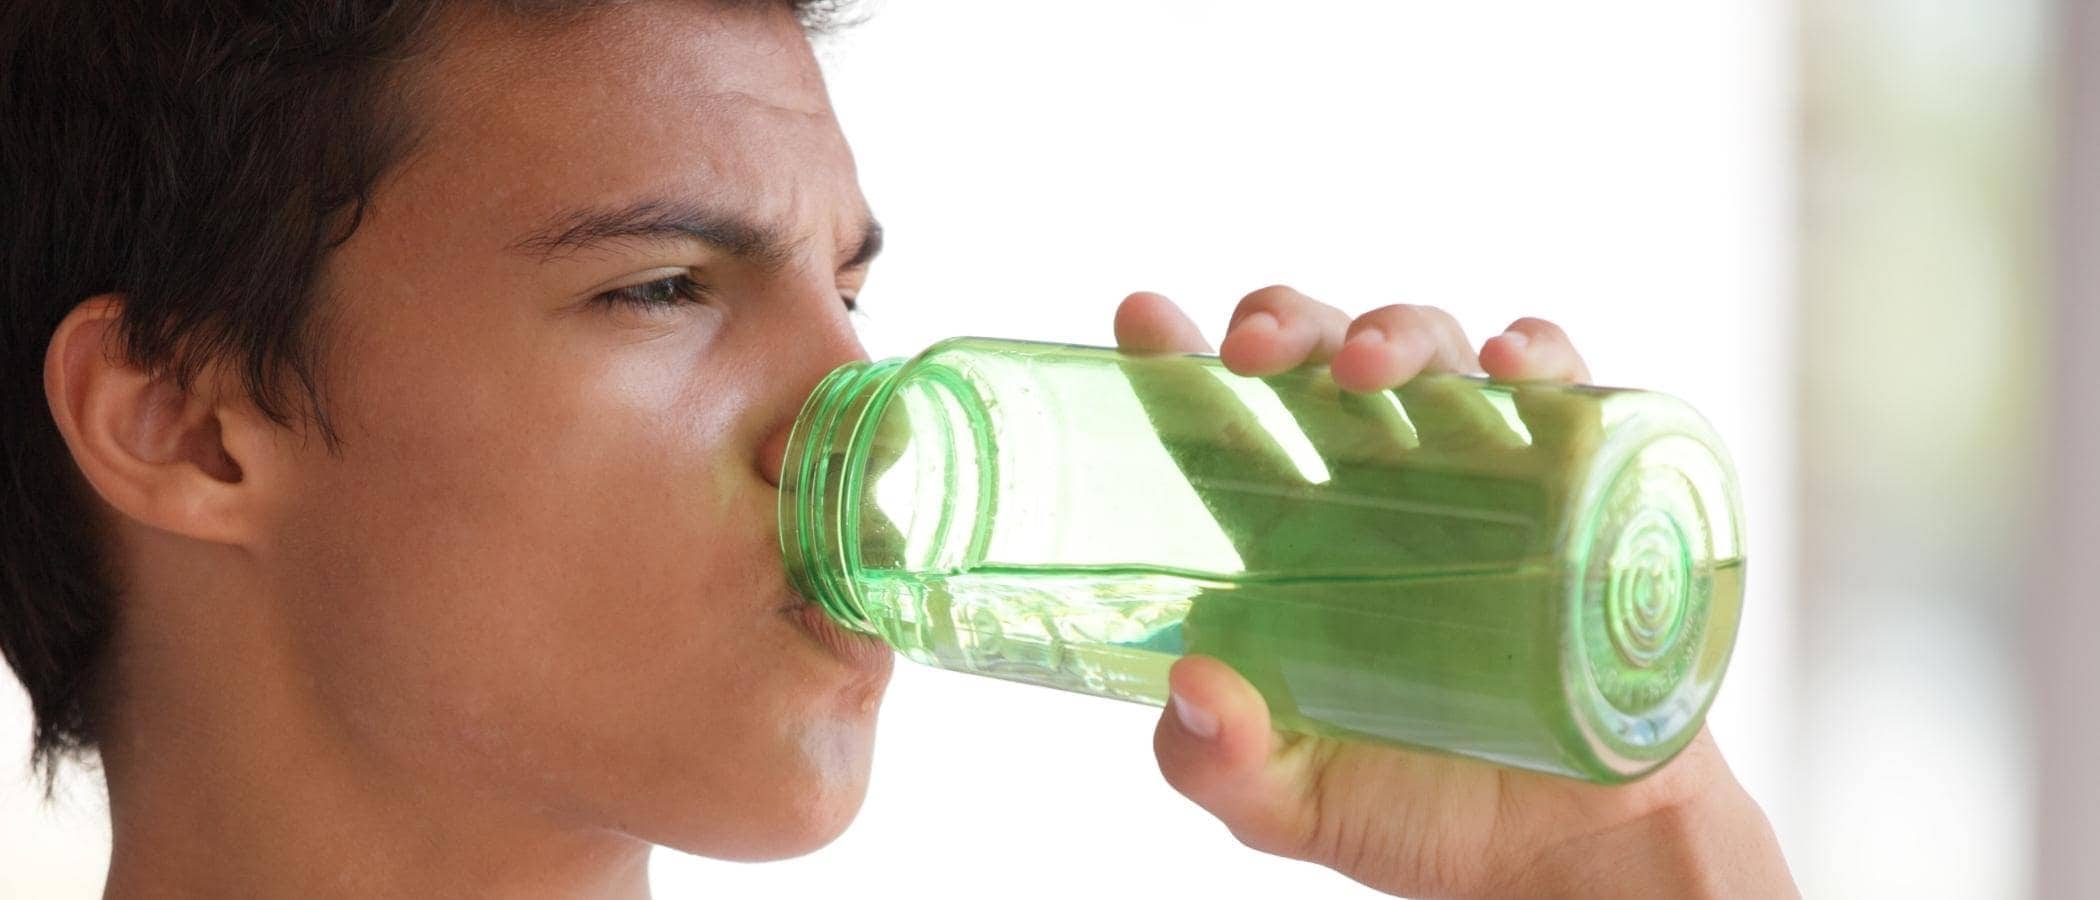 Teen drinks water from green bottle